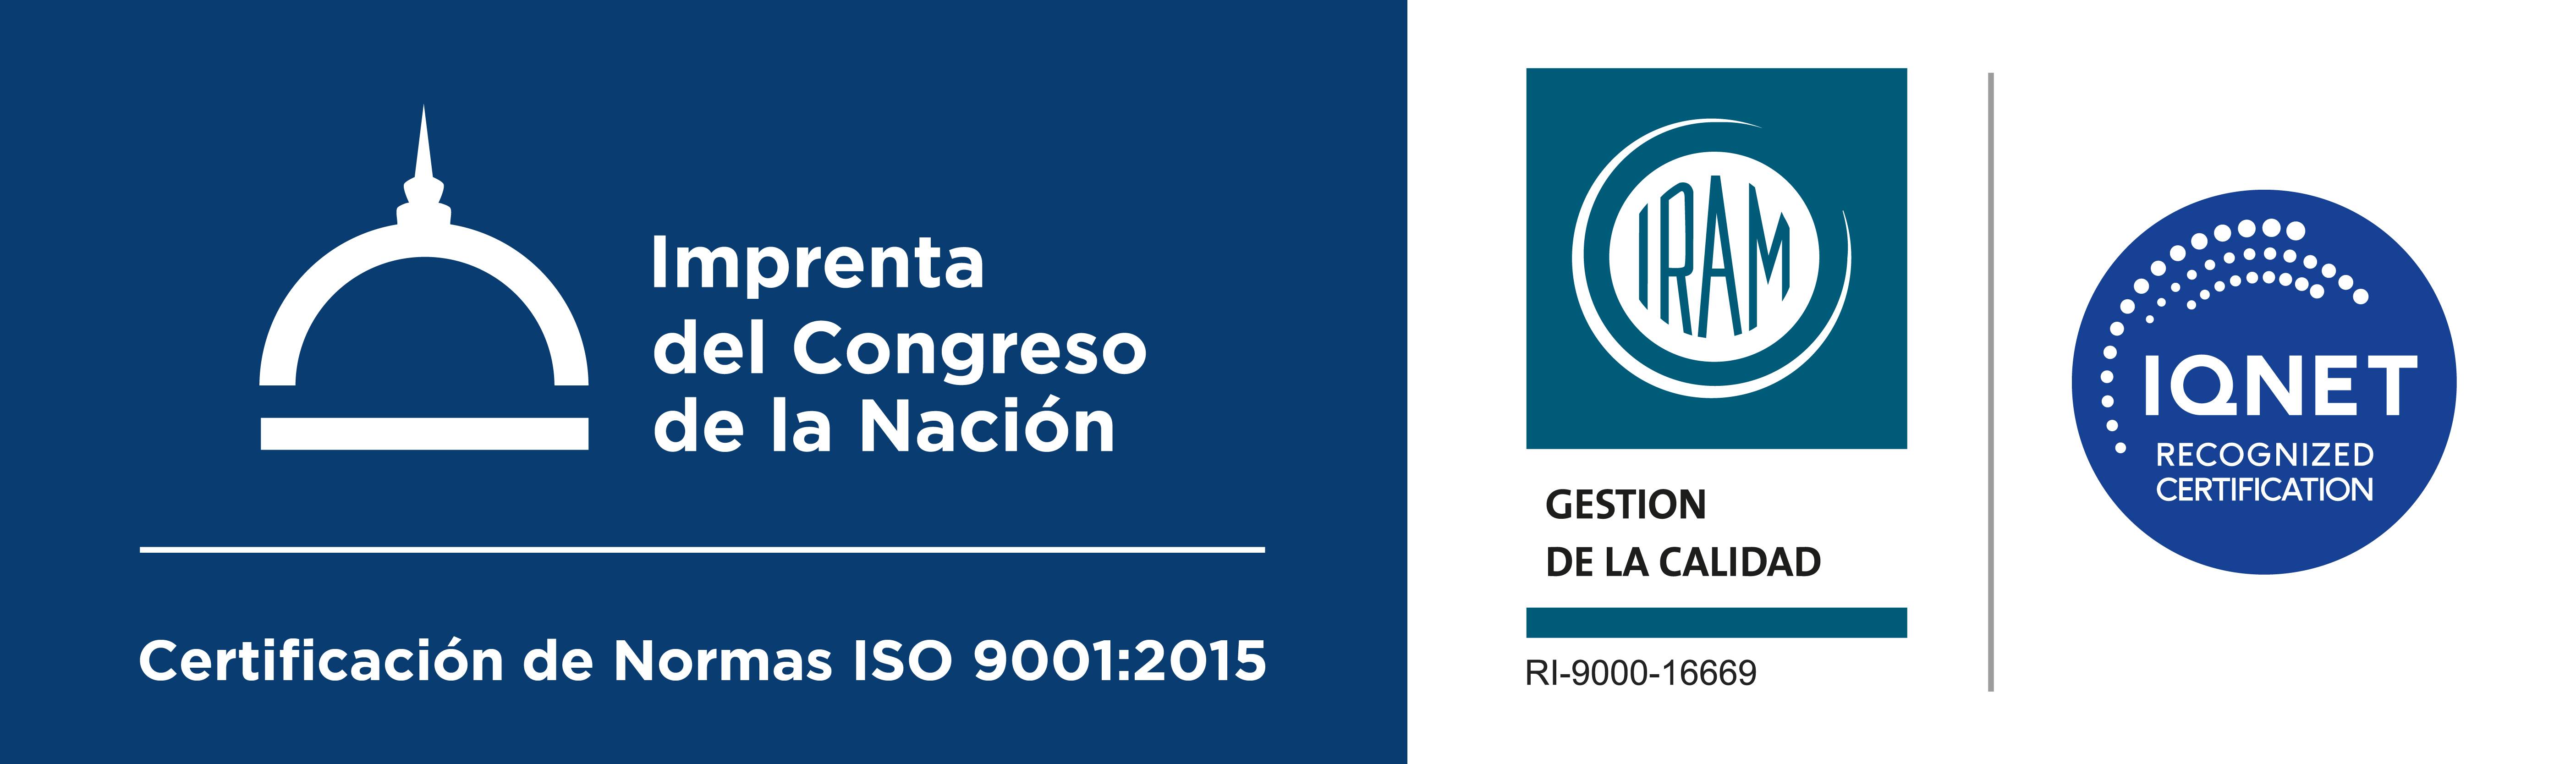 CERTIFICACION ISO 9001